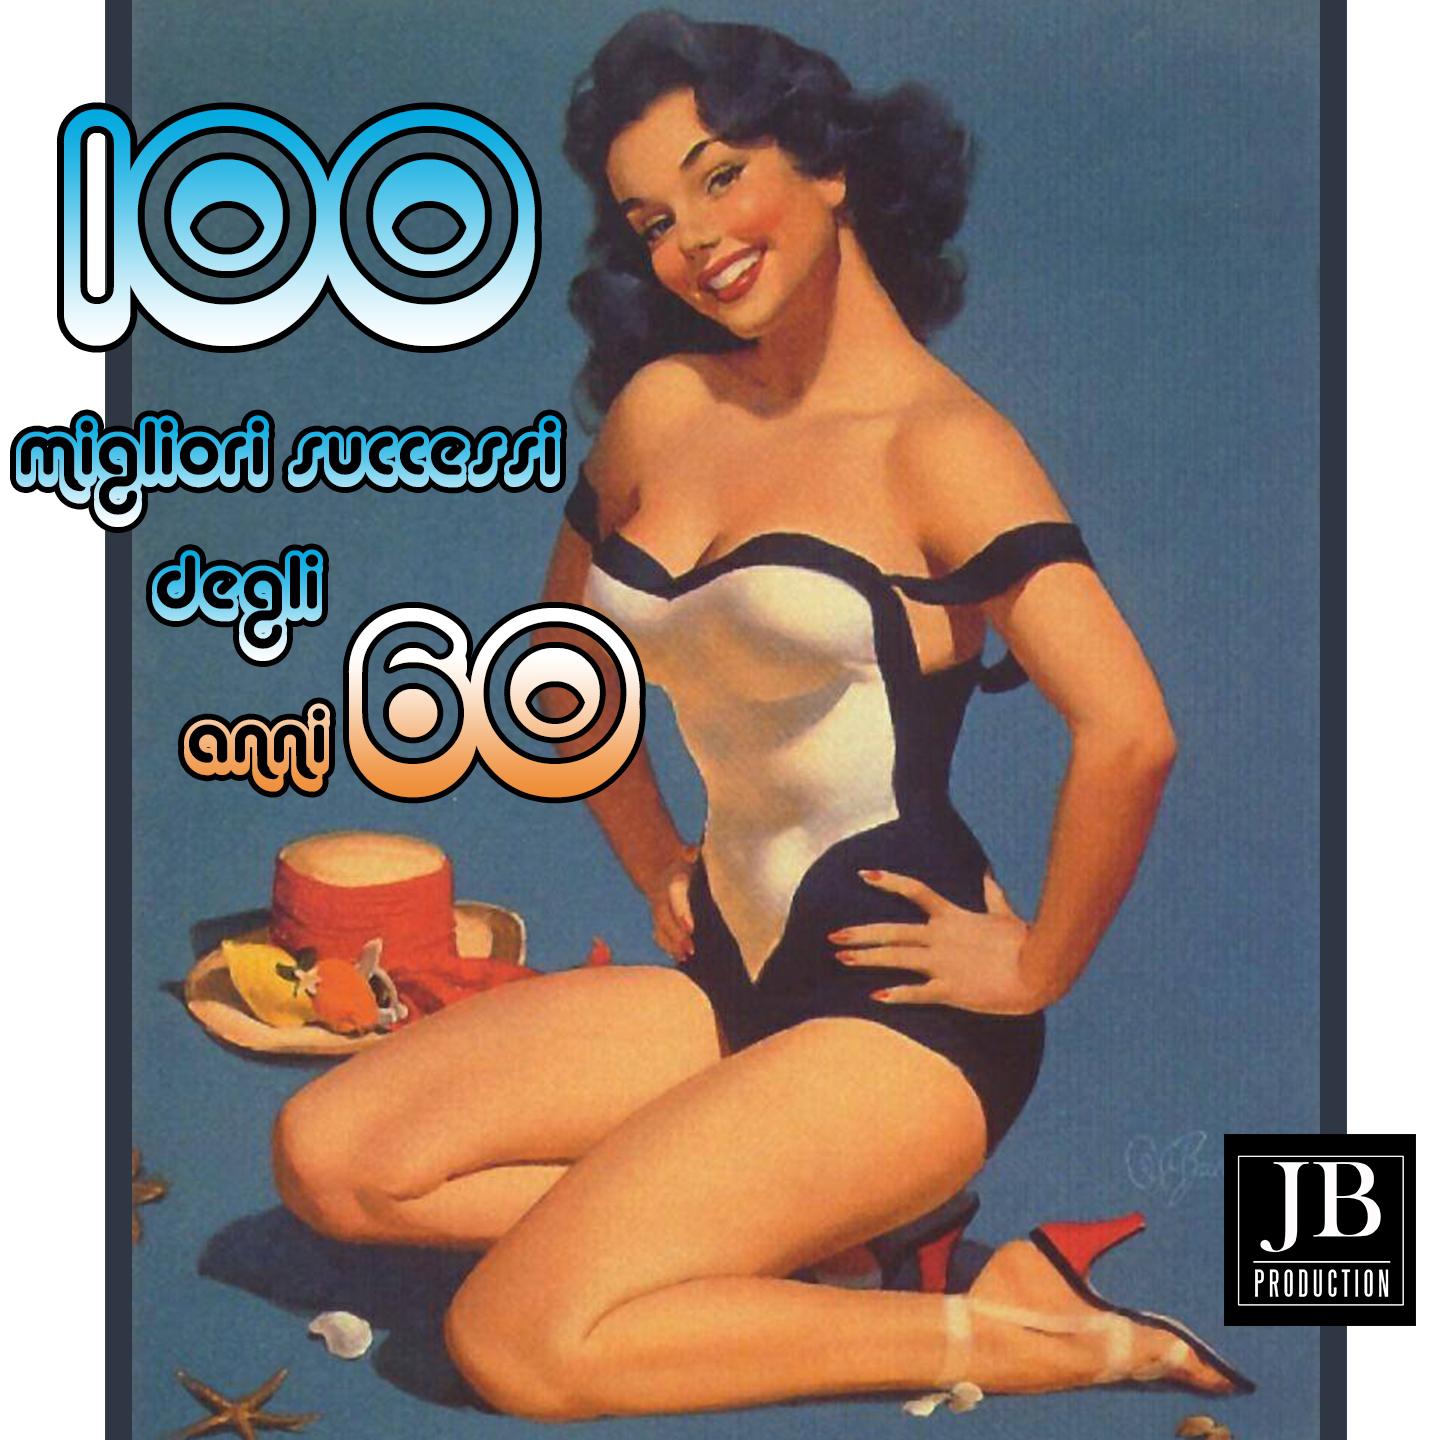 Постер альбома 100 migliori successi degli anni 60